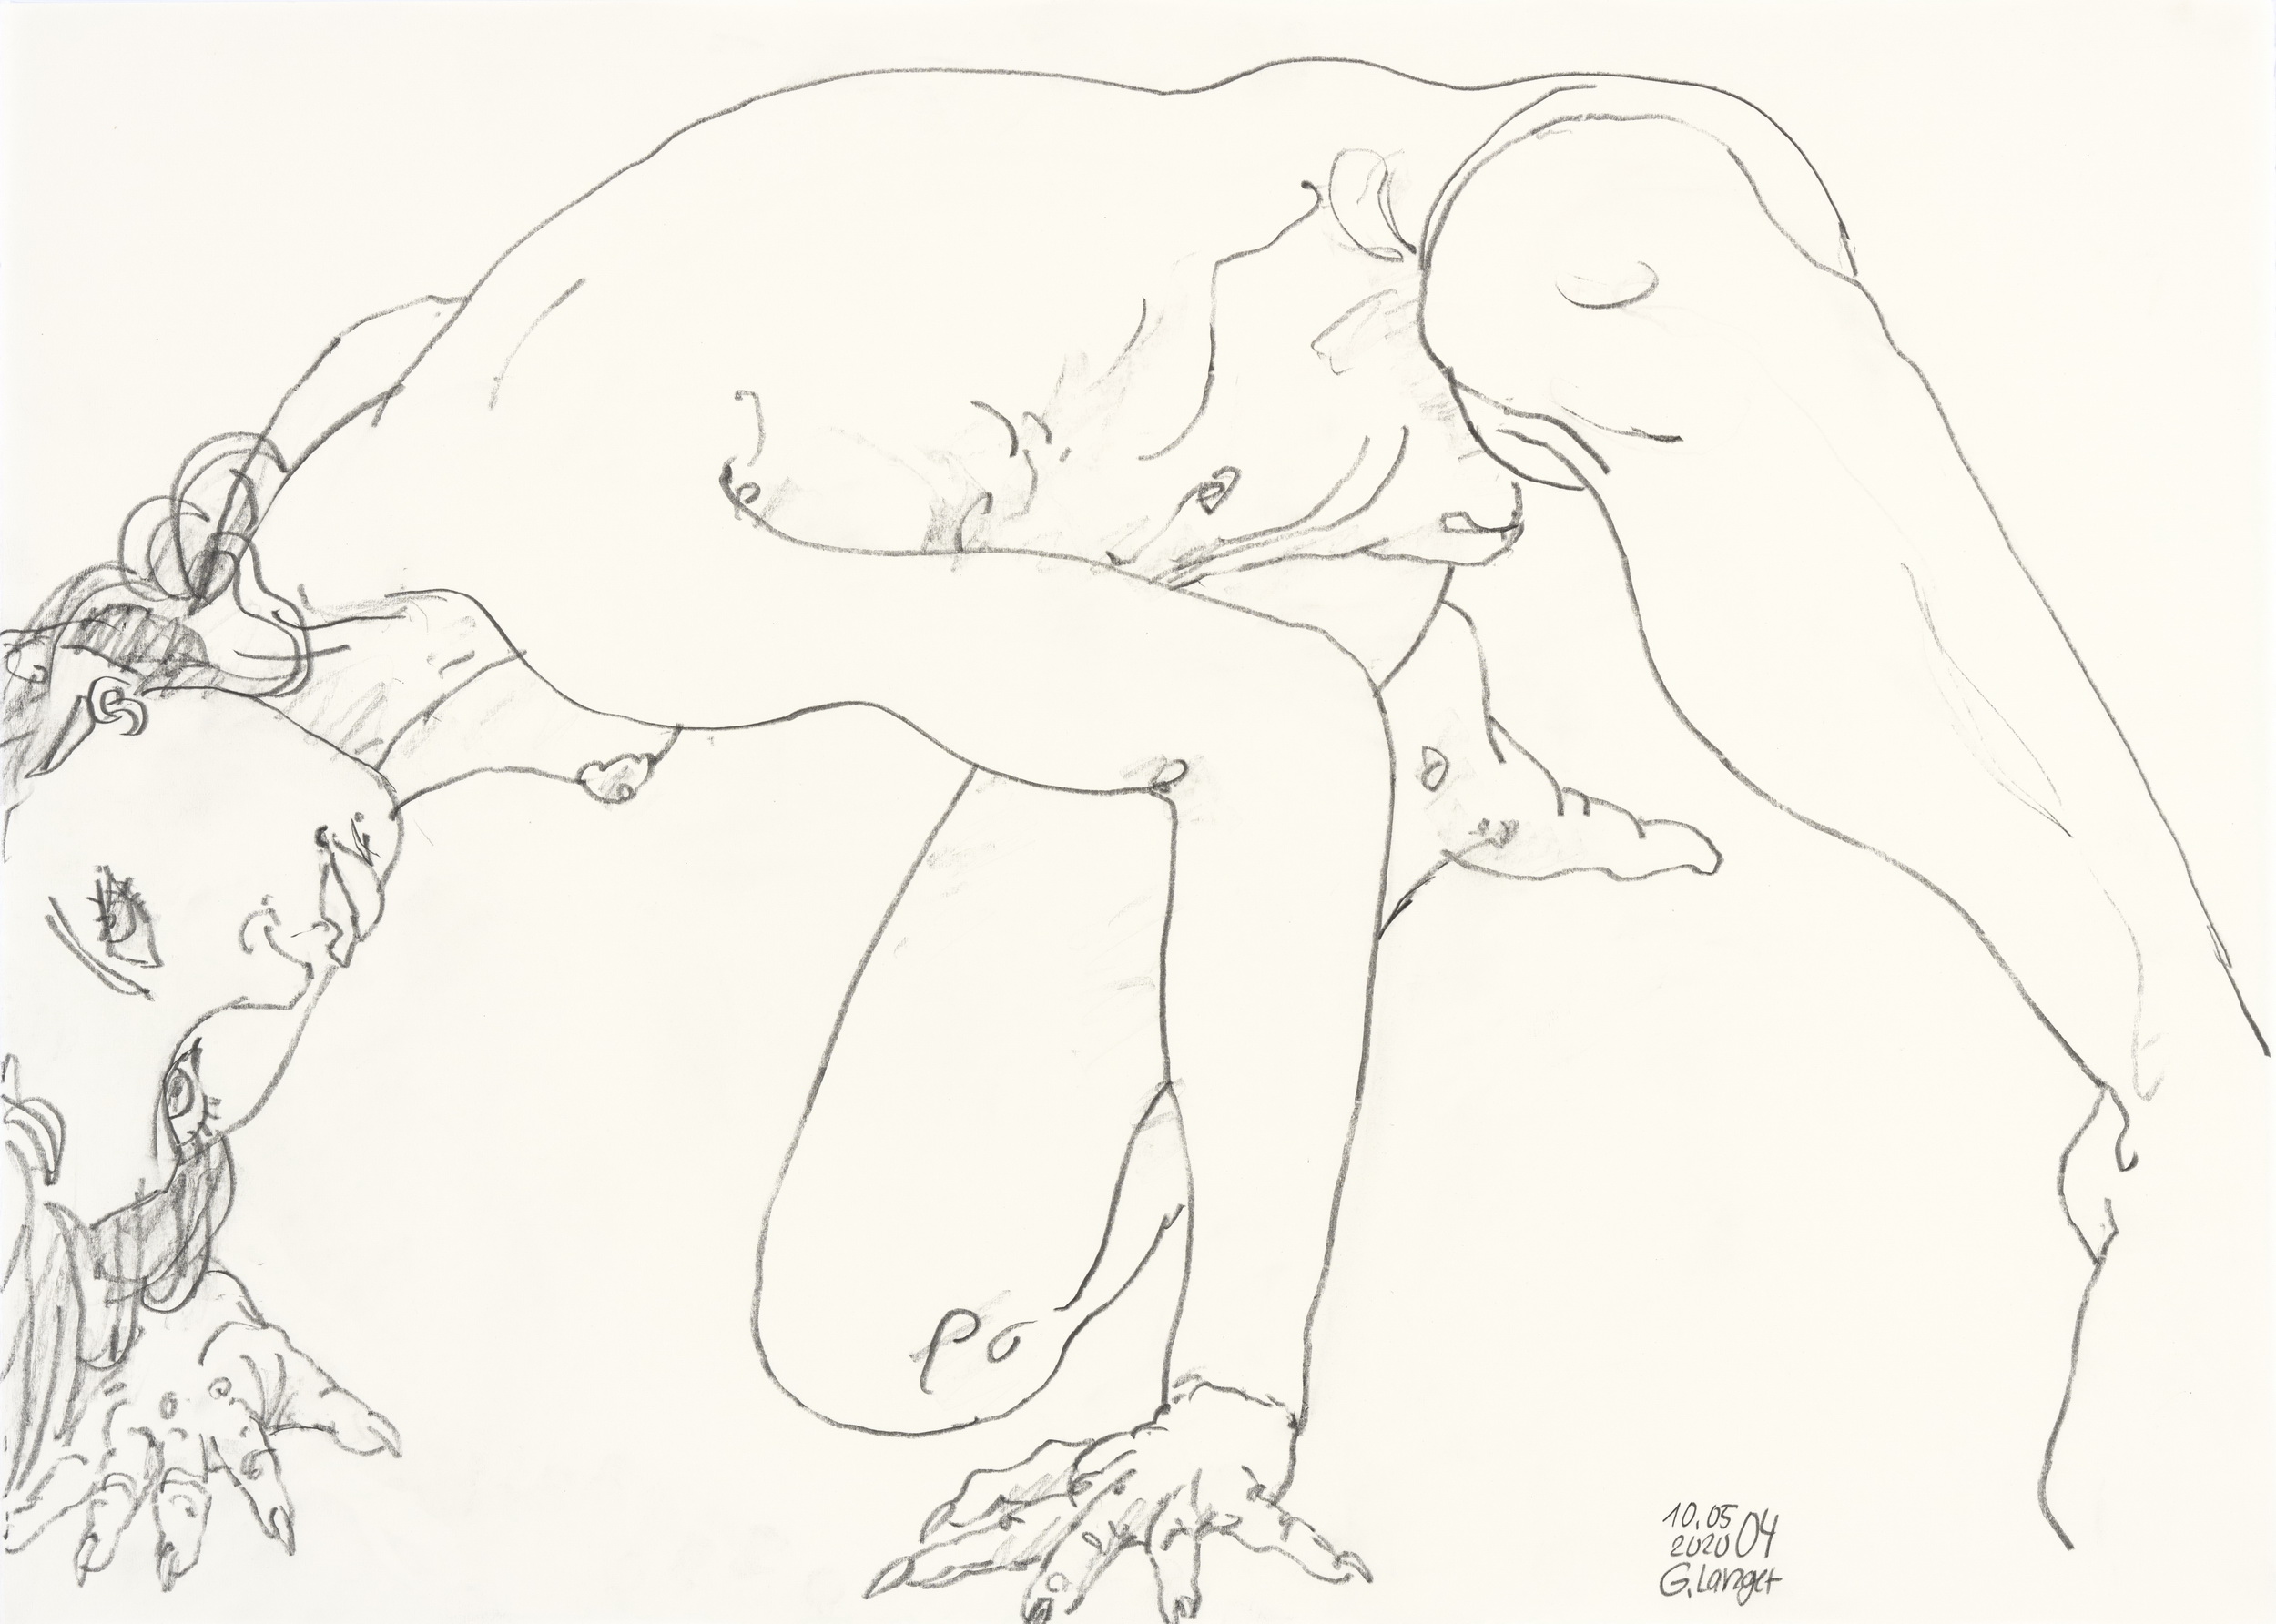 Gunter Langer, Kniender Mädchenakt vorn übergebeugt, 2020, Zeichenpapier, 51 x 70 cm